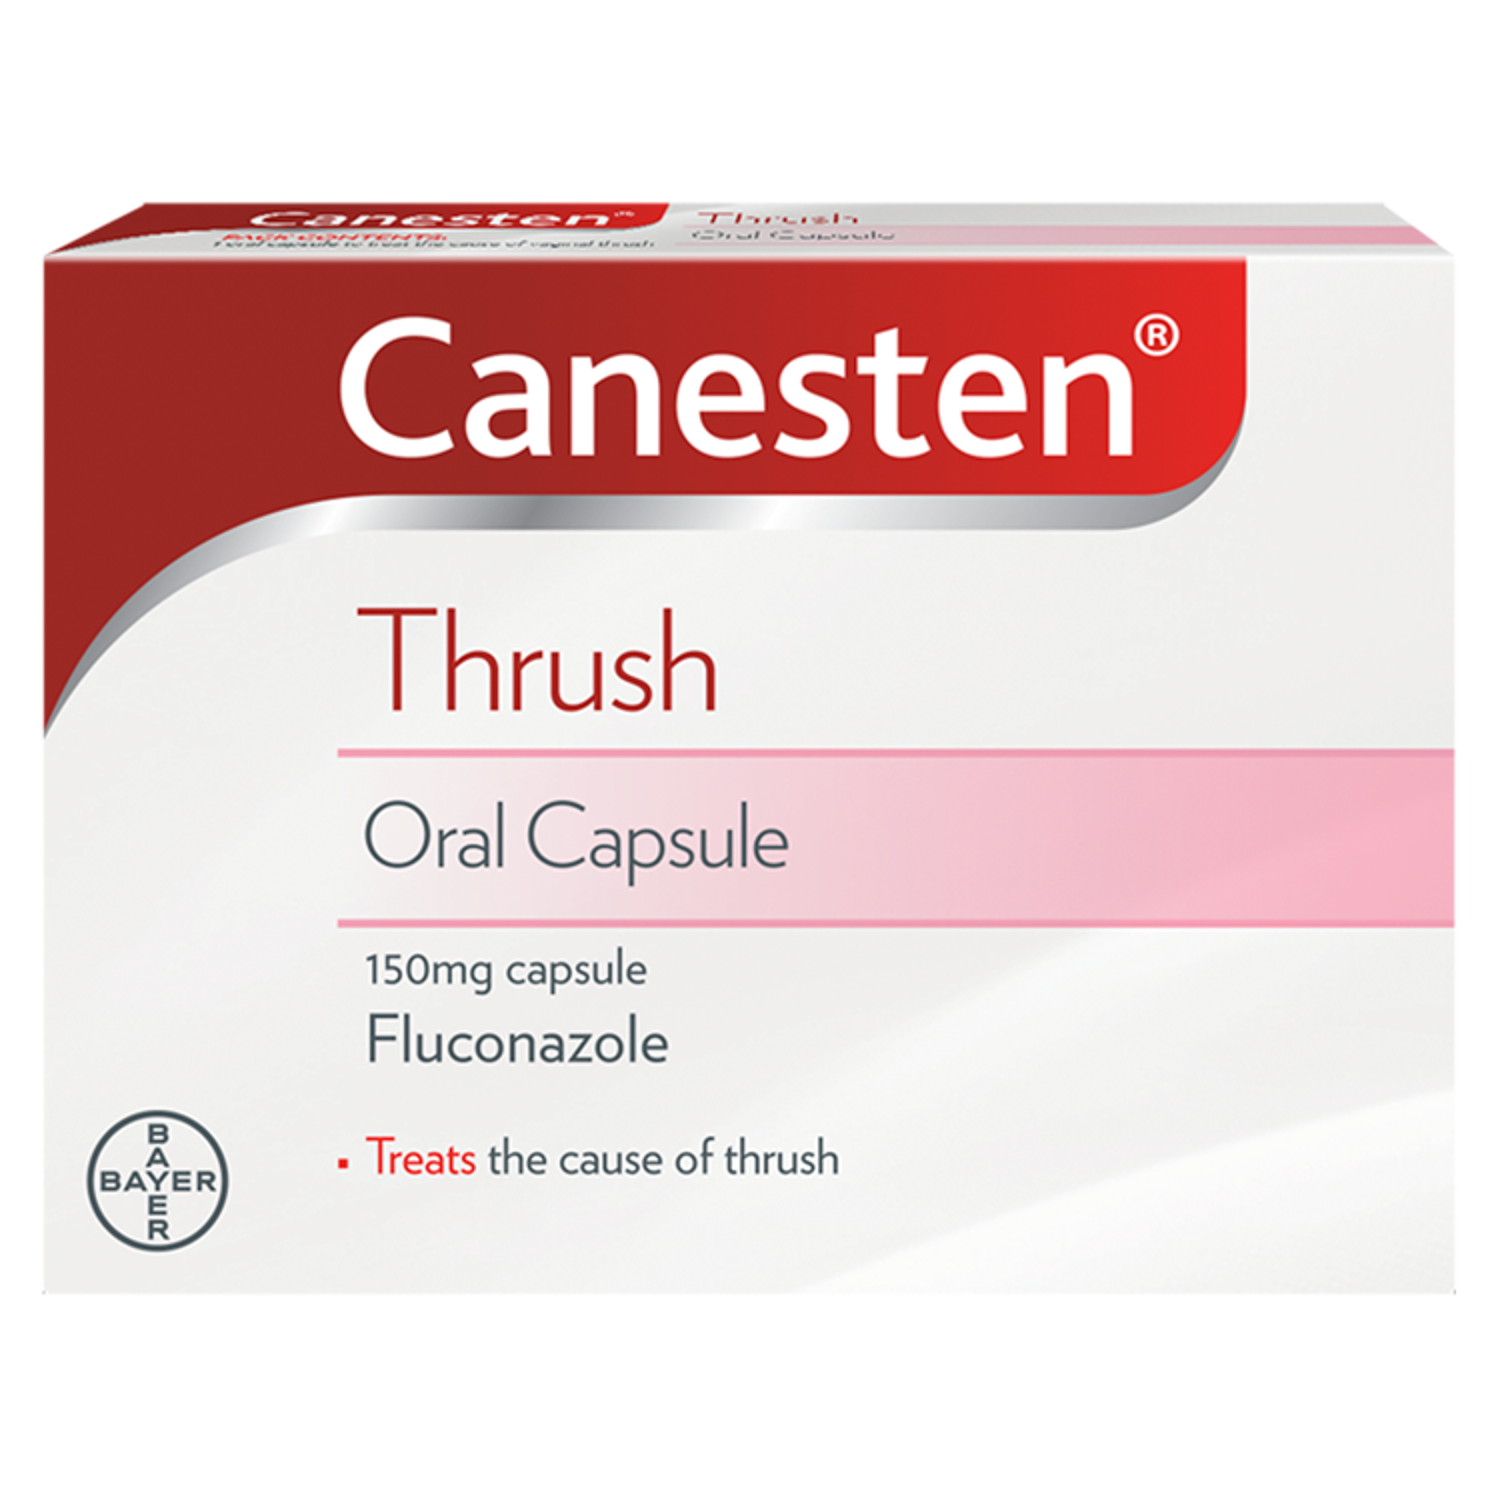 Canesten Thrush Oral Capsule (1)